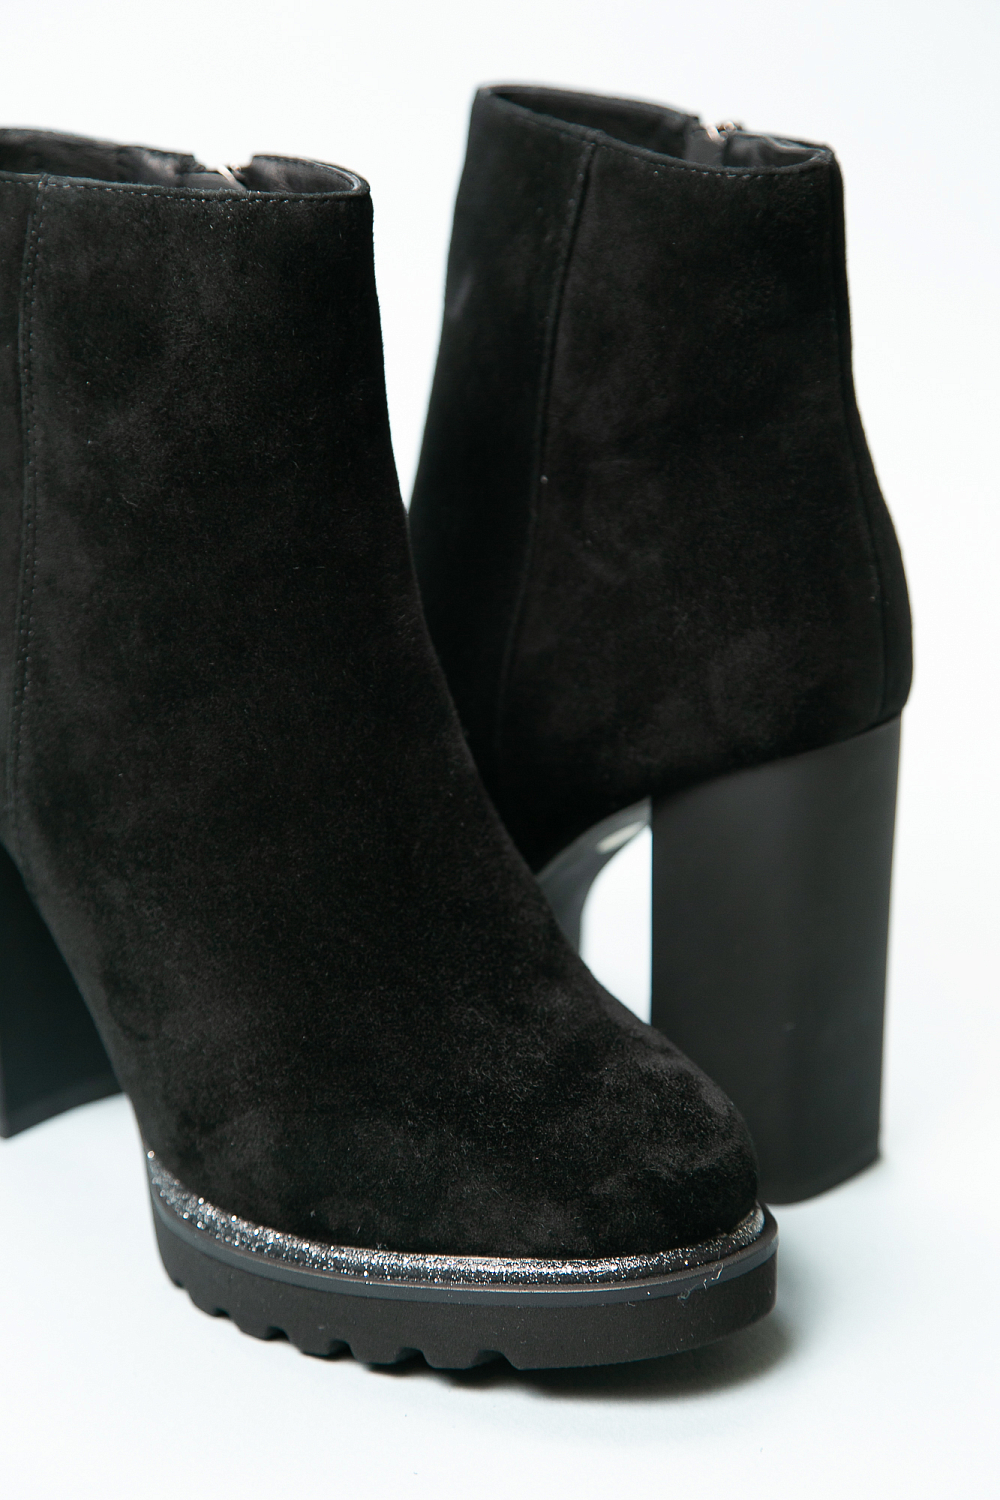 ботинки зимние женские на каблуке